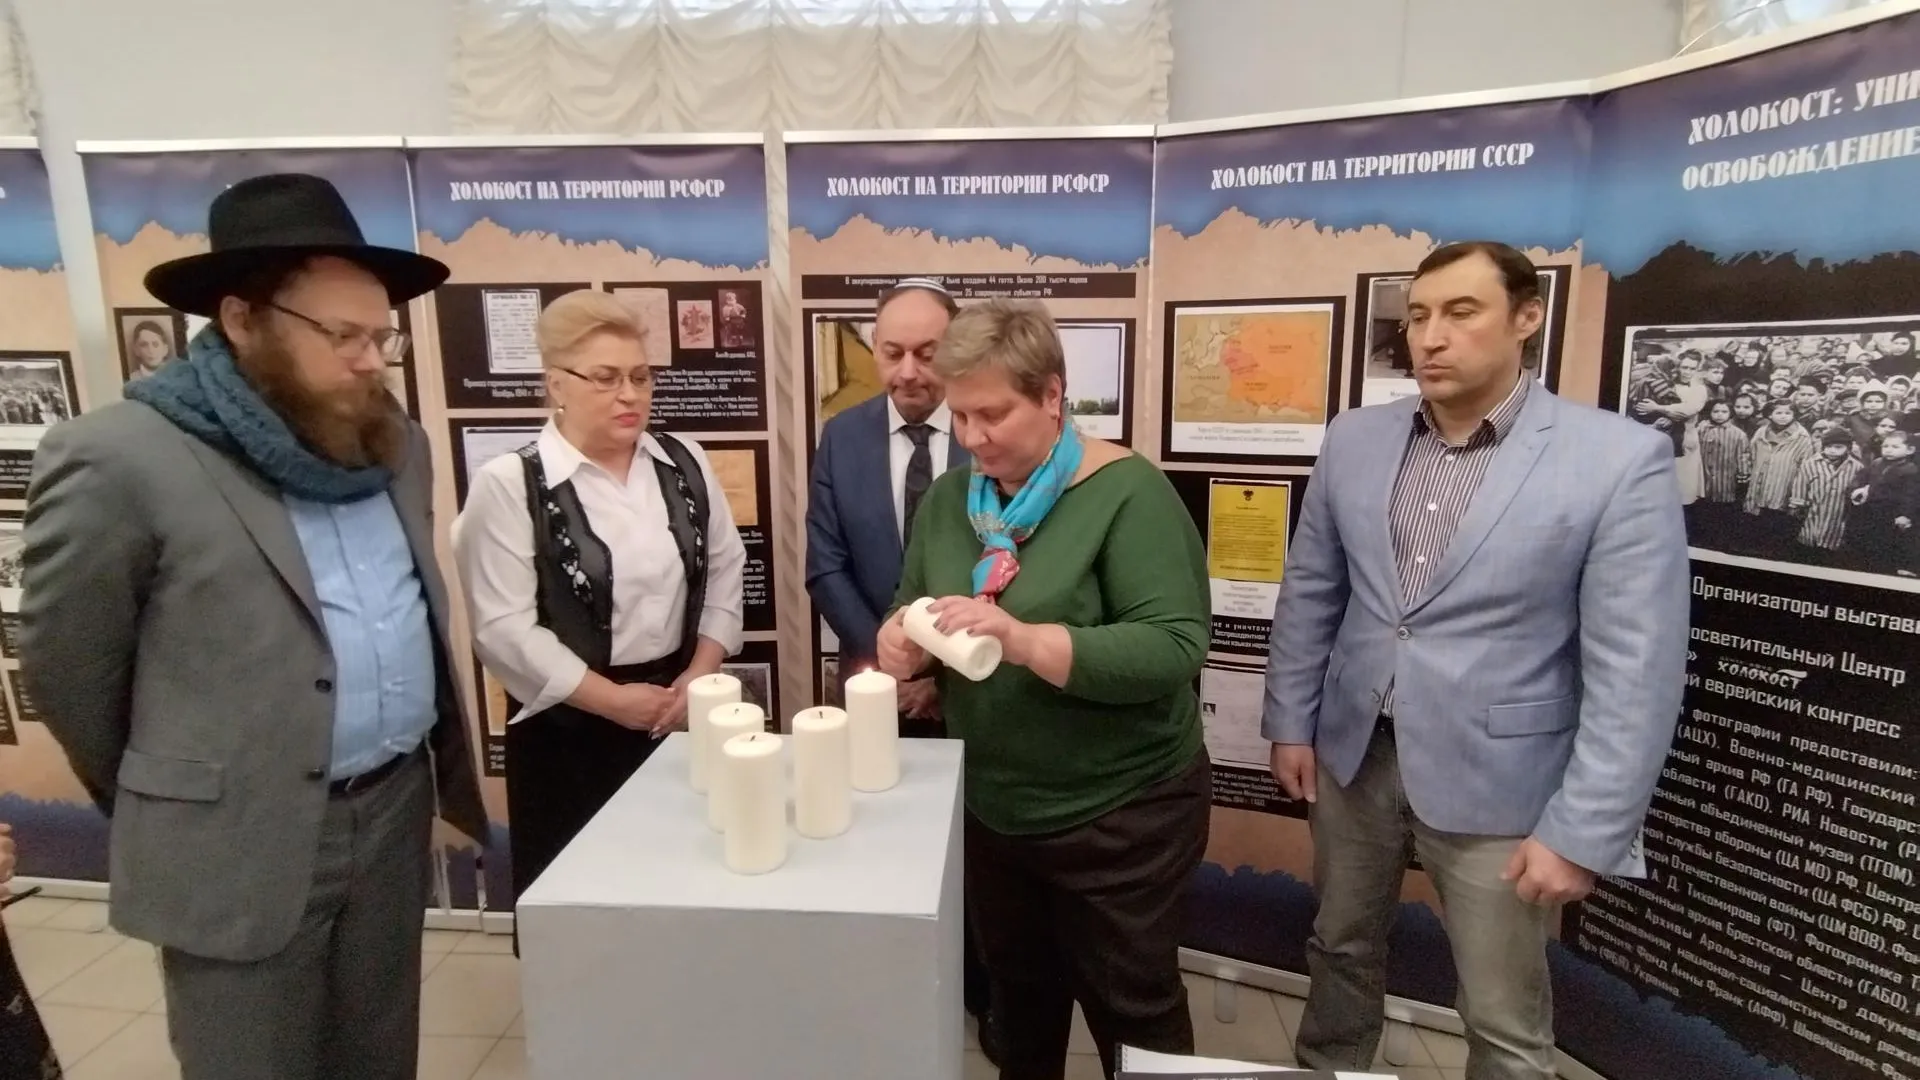 Выставка в память о жертвах холокоста открылась в Мытищах